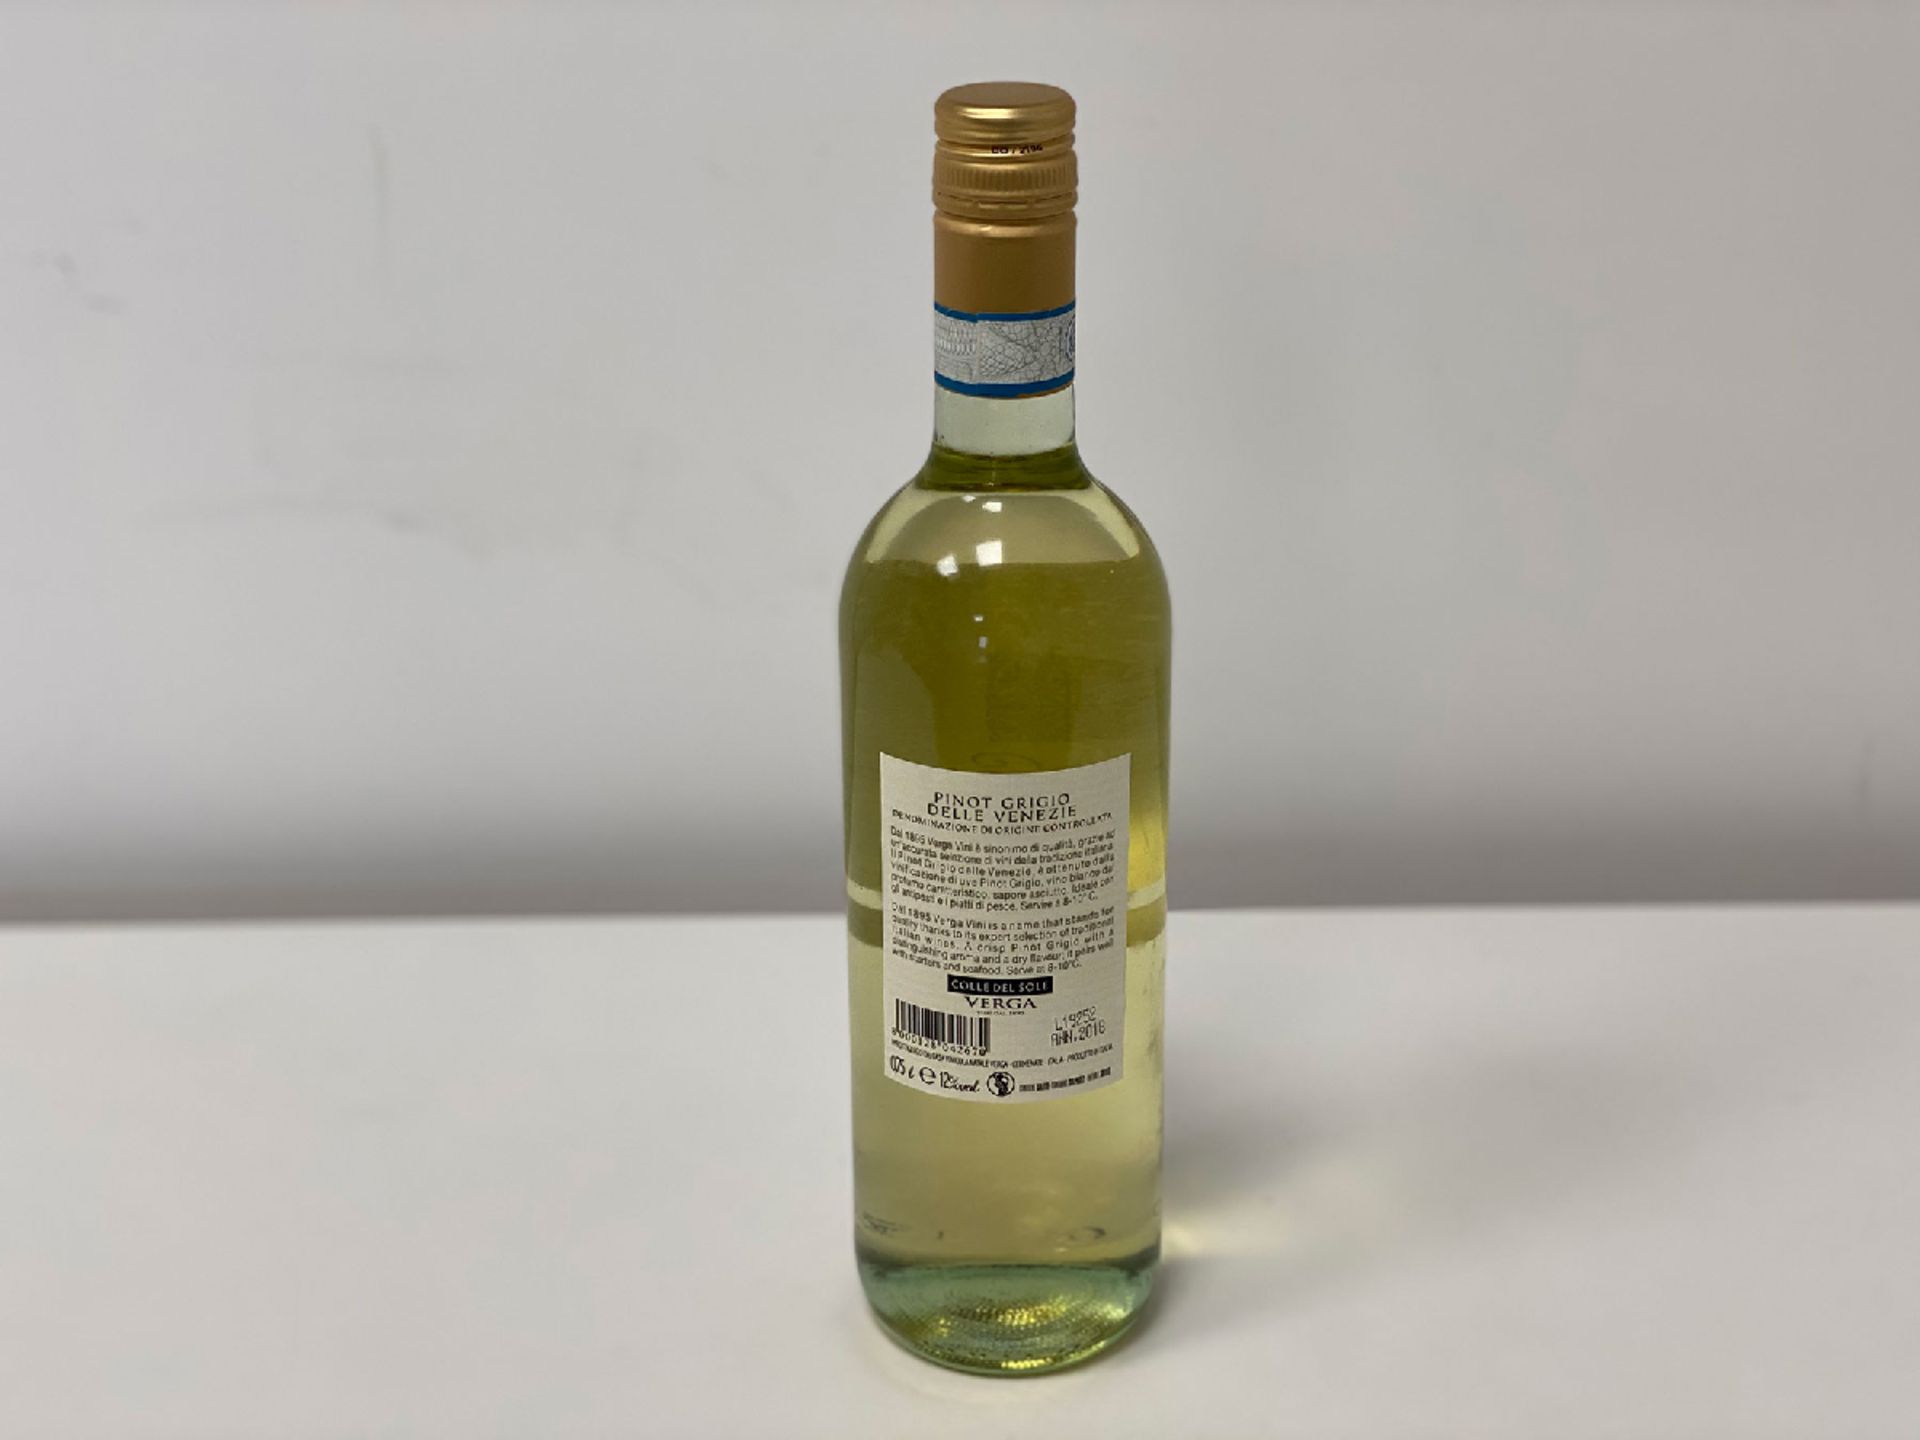 30 Bottles (5 Cases) of Natale Verga - Pinot Grigio - Colle del Sole - Venezie DOC - Natale Verga - - Image 2 of 2